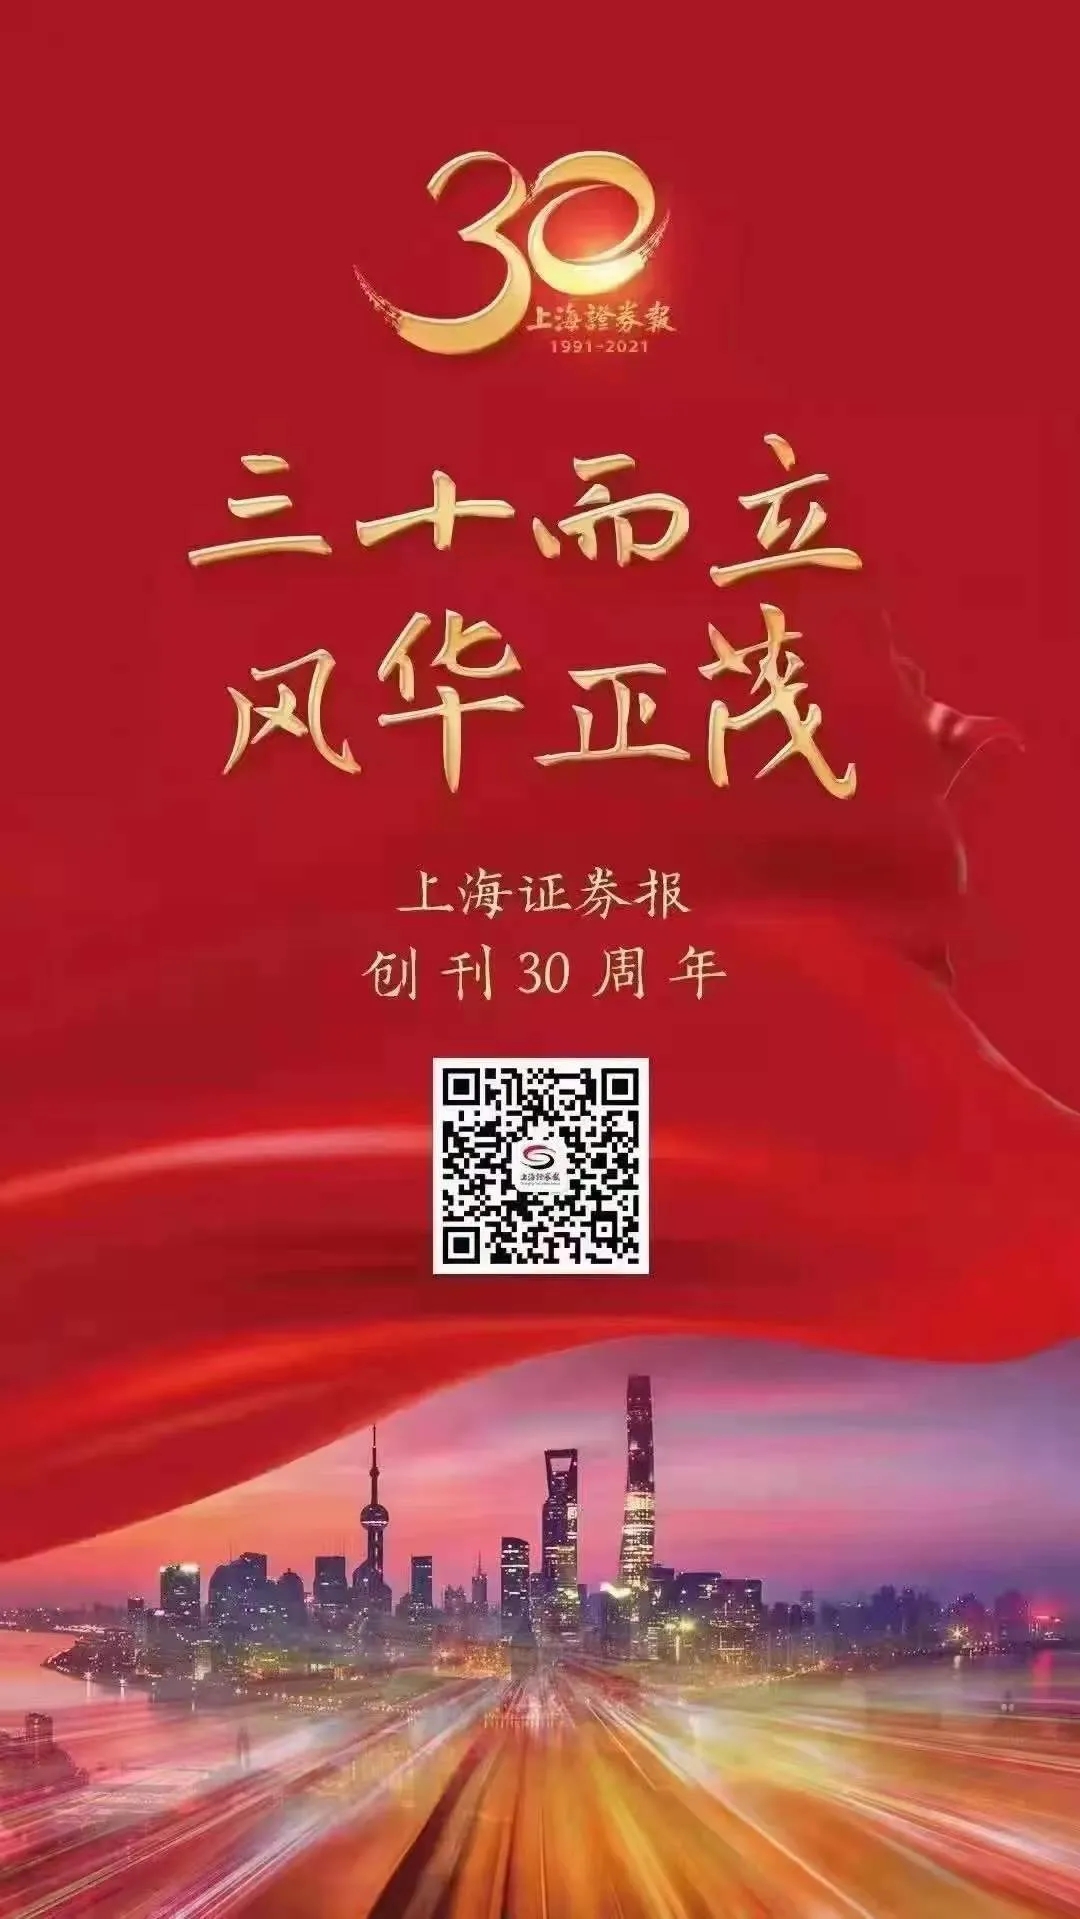 陕西凯时k66股份有限公司热烈祝贺上海证券报创刊30周年